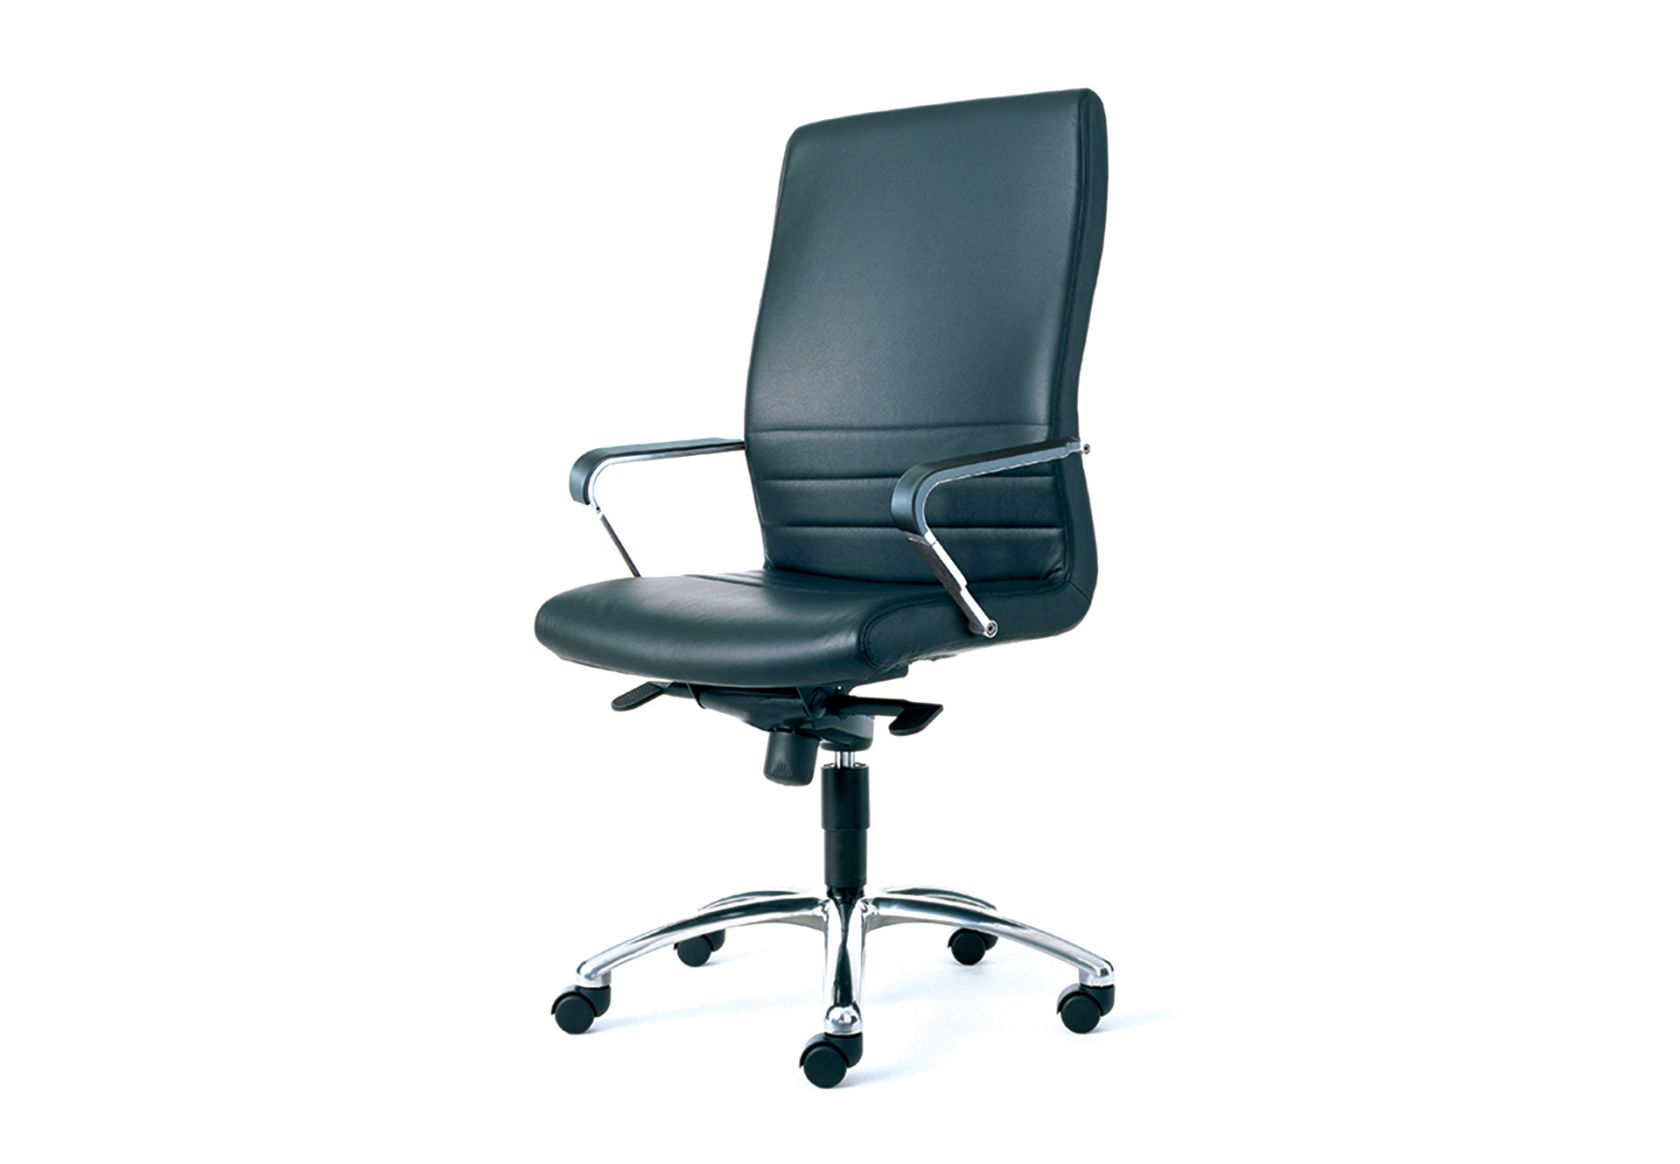 Uniflex Chair